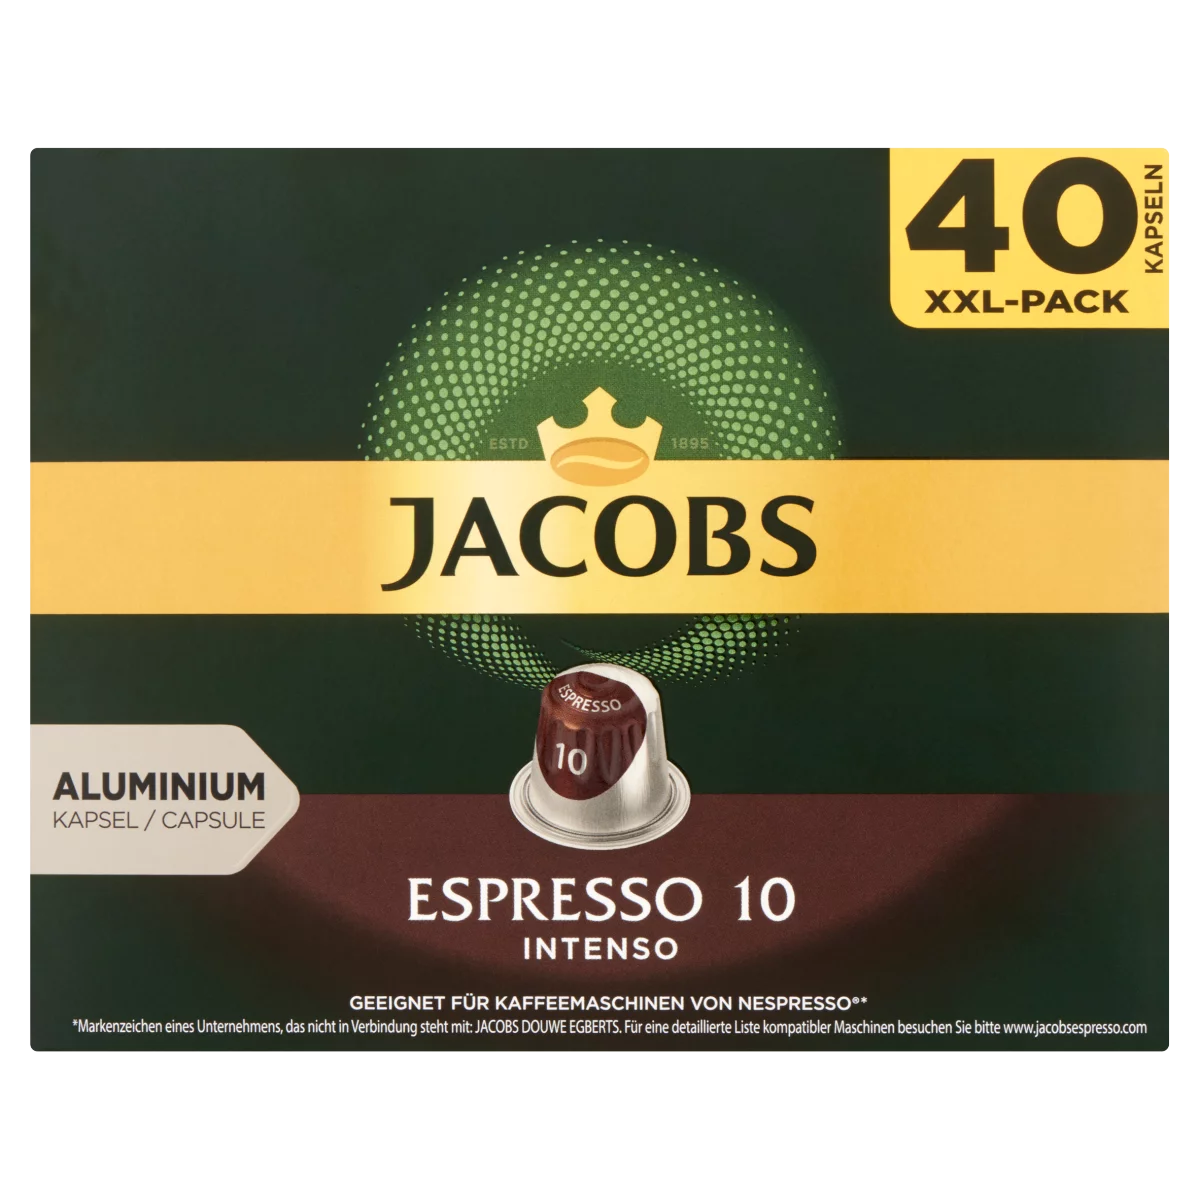 Jacobs Espresso 10 Intenso őrölt-pörkölt kávé kapszulában 40 db 208 g